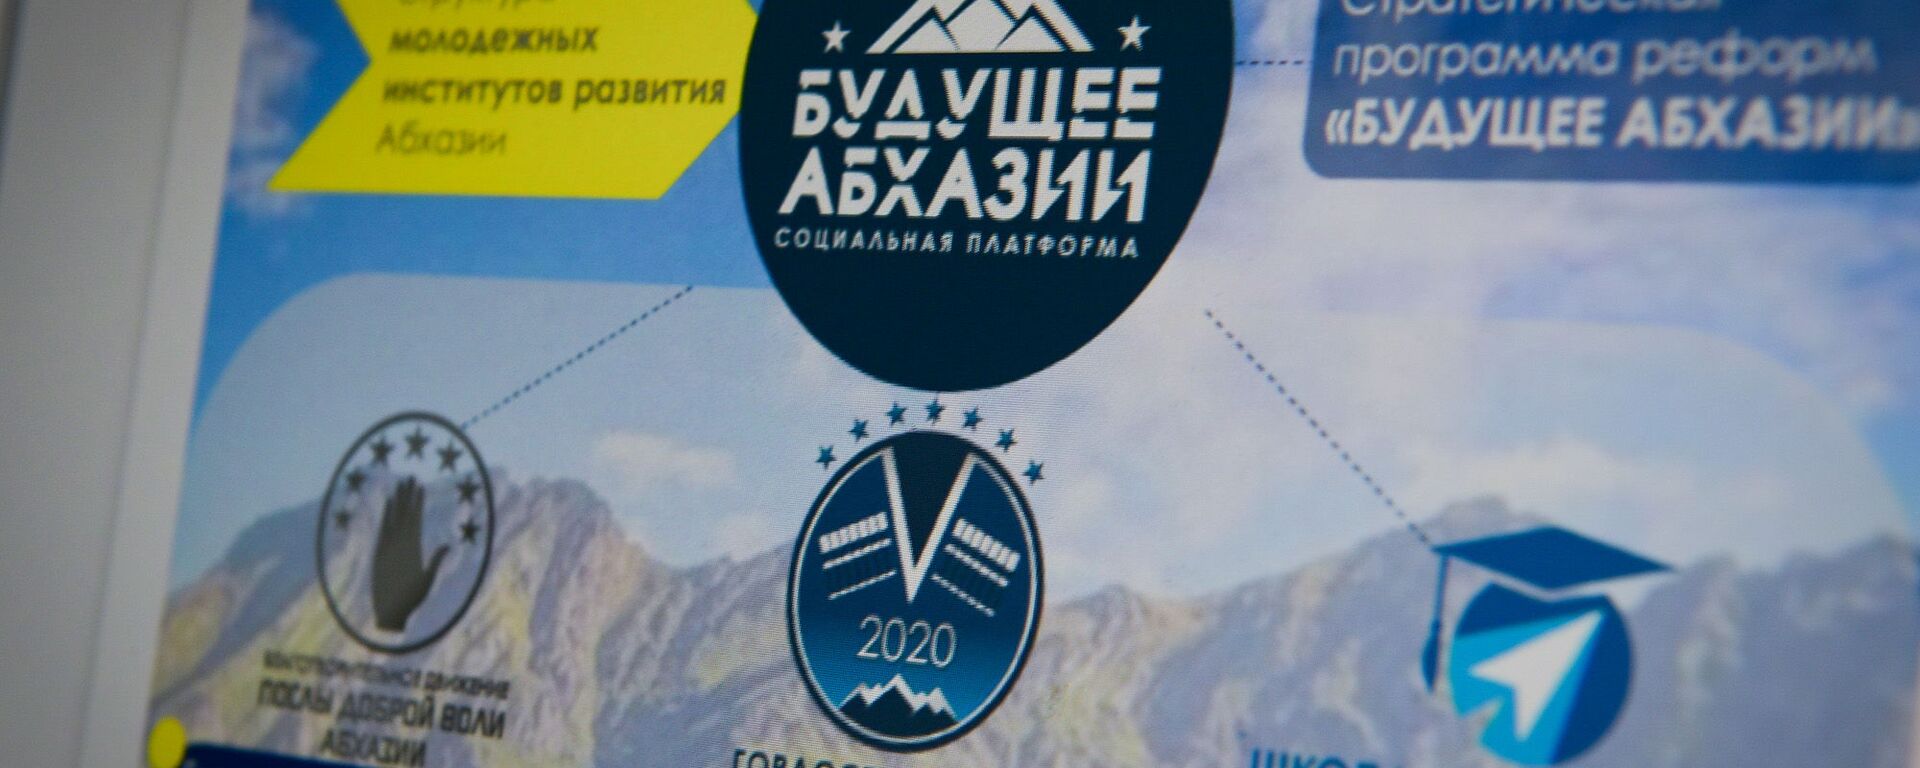 Программа реформ Будущее Абхазии была разработана финалистами конкурса Гордость Абхазии - Sputnik Абхазия, 1920, 13.11.2020